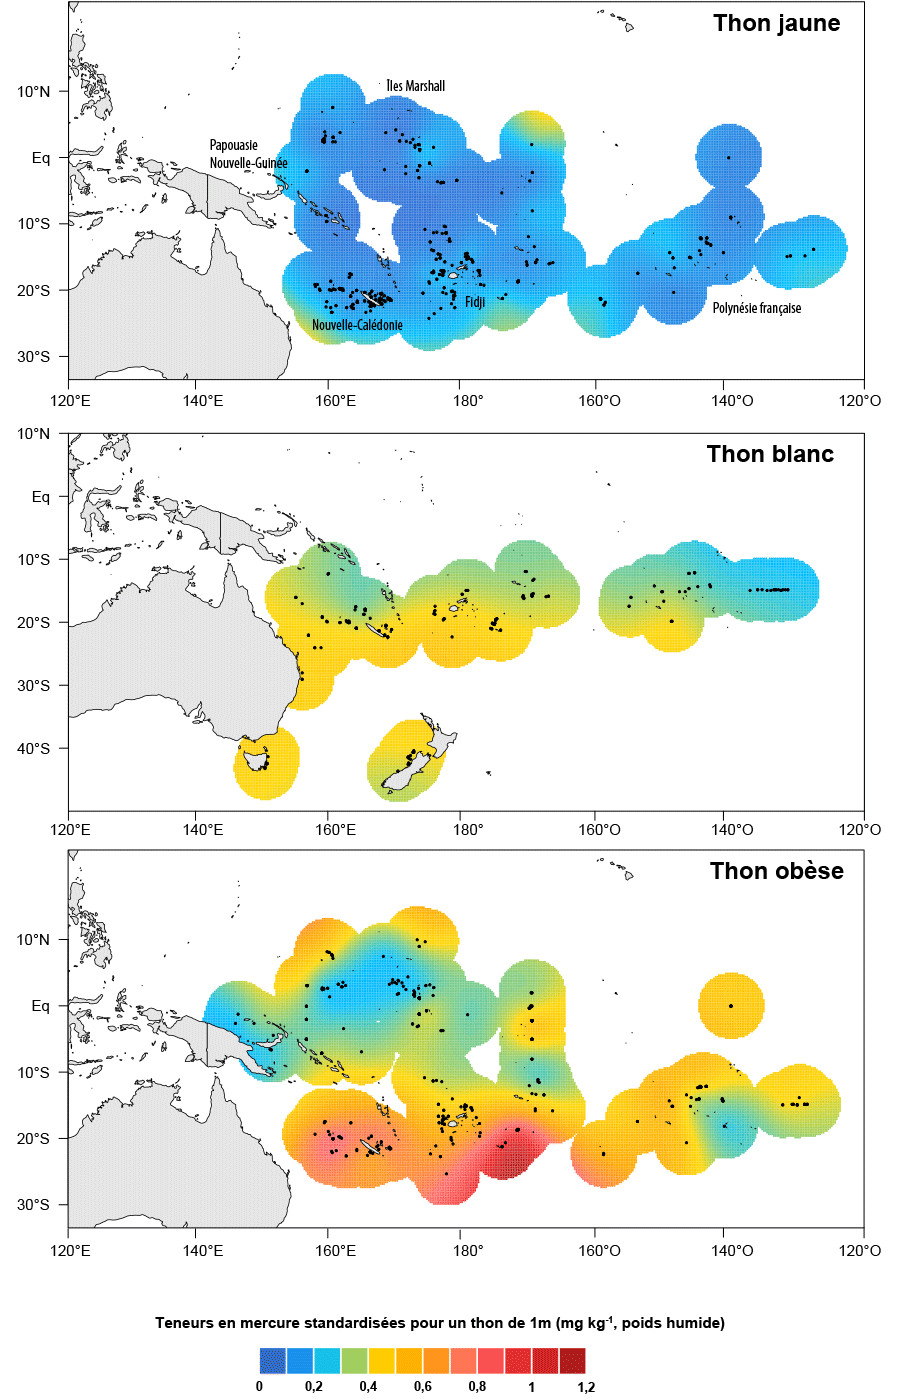 Figure 3. Distribution géographique des teneurs en mercure dans les thons jaune, blanc et obèse du Pacifique ouest et central pour des thons d’une taille standard de 1m.